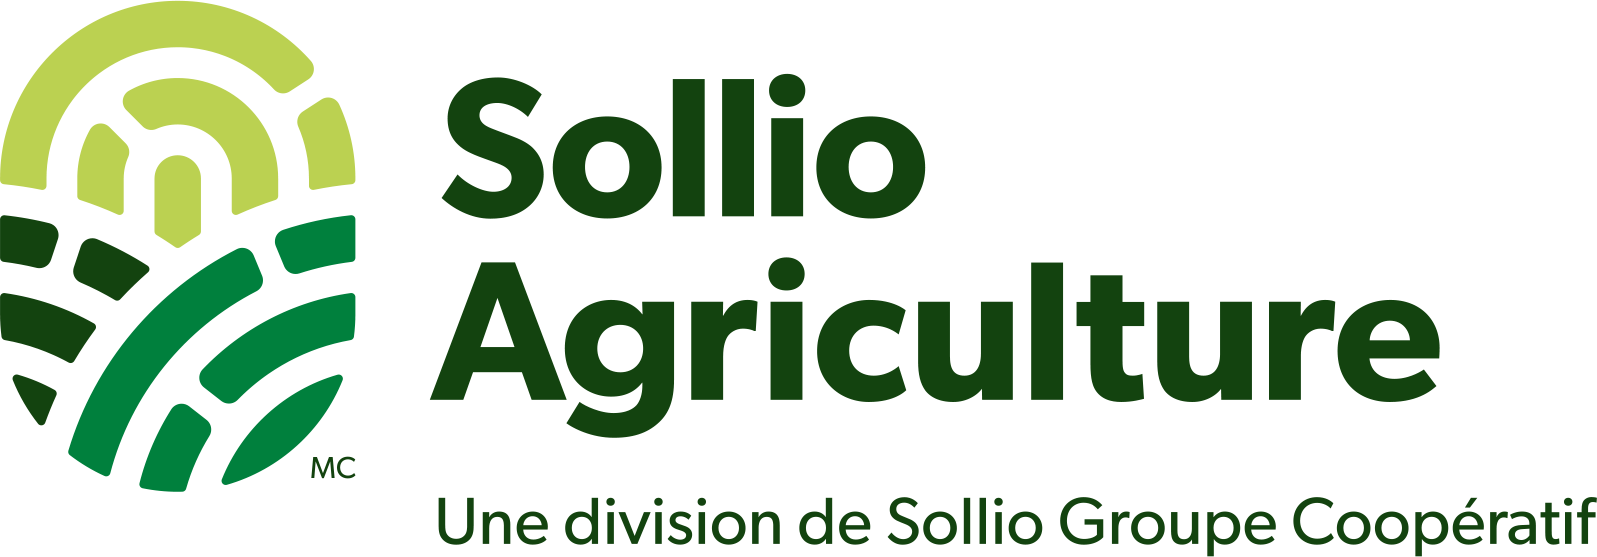 Logo Sollio Agriculture avec endossement